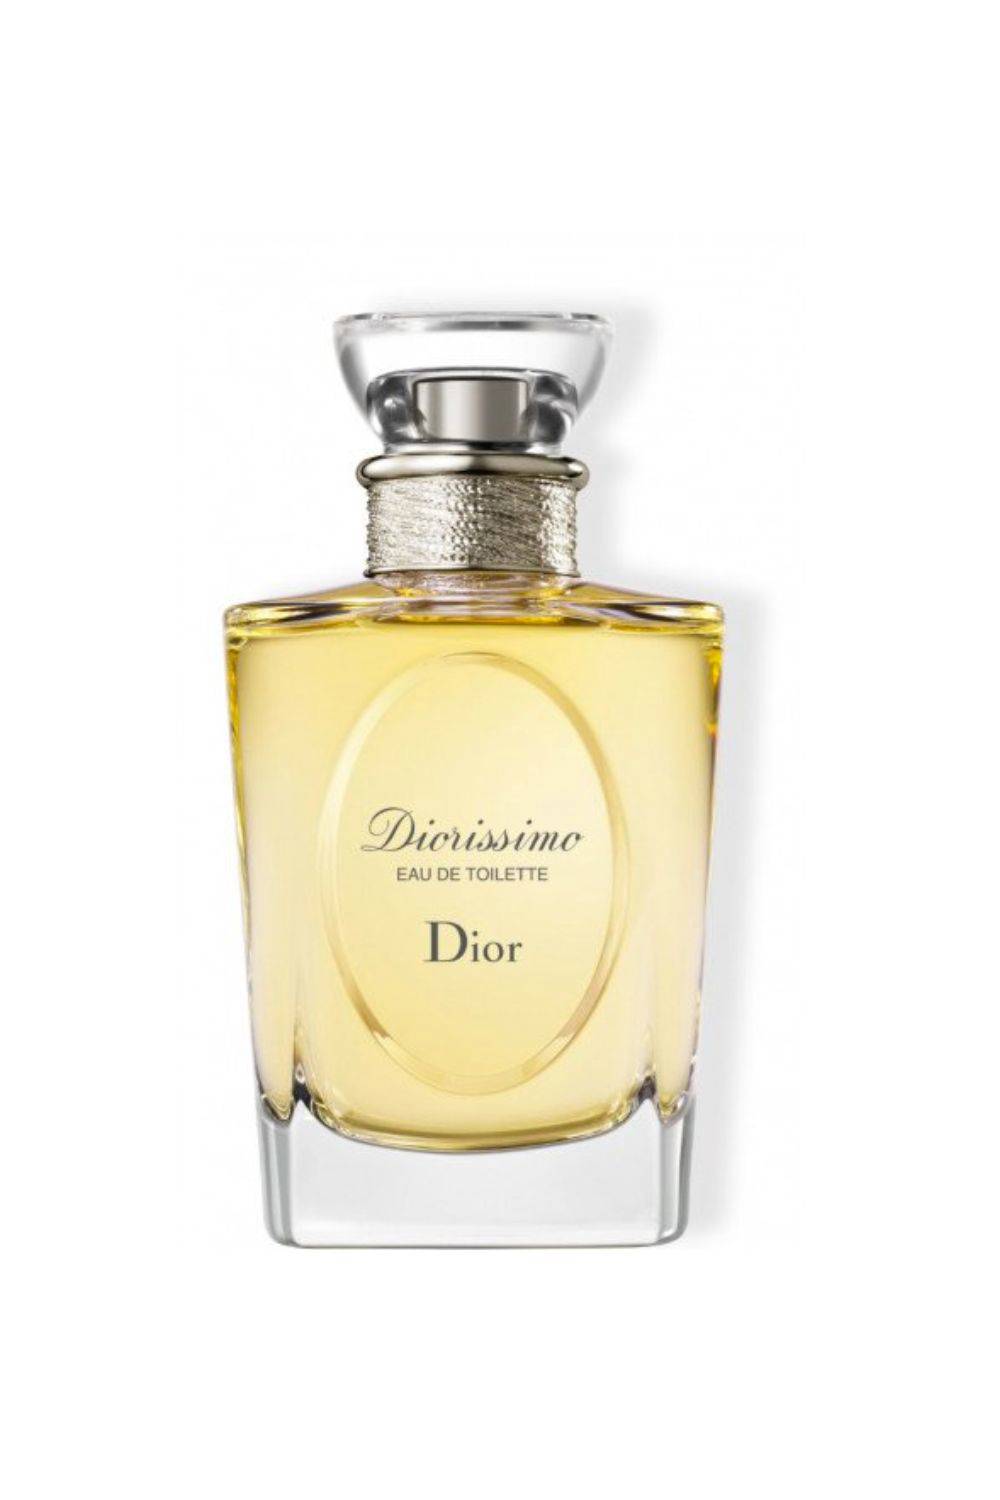 Los perfumes favoritos de Lady Di: Diorissimo de Dior